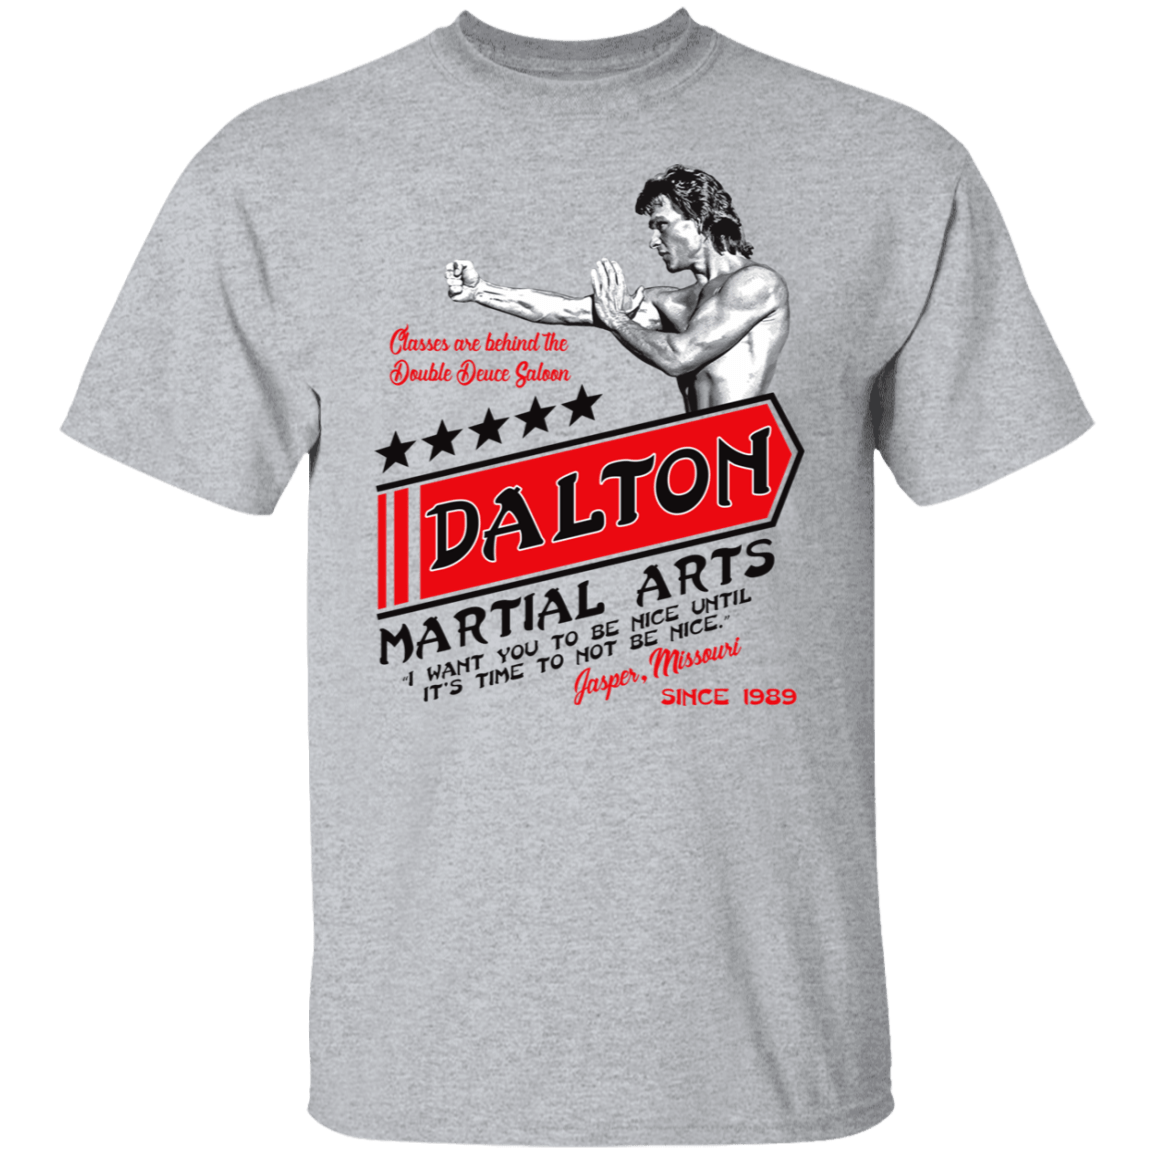 T-Shirts Sport Grey / S Dalton Martial Arts T-Shirt